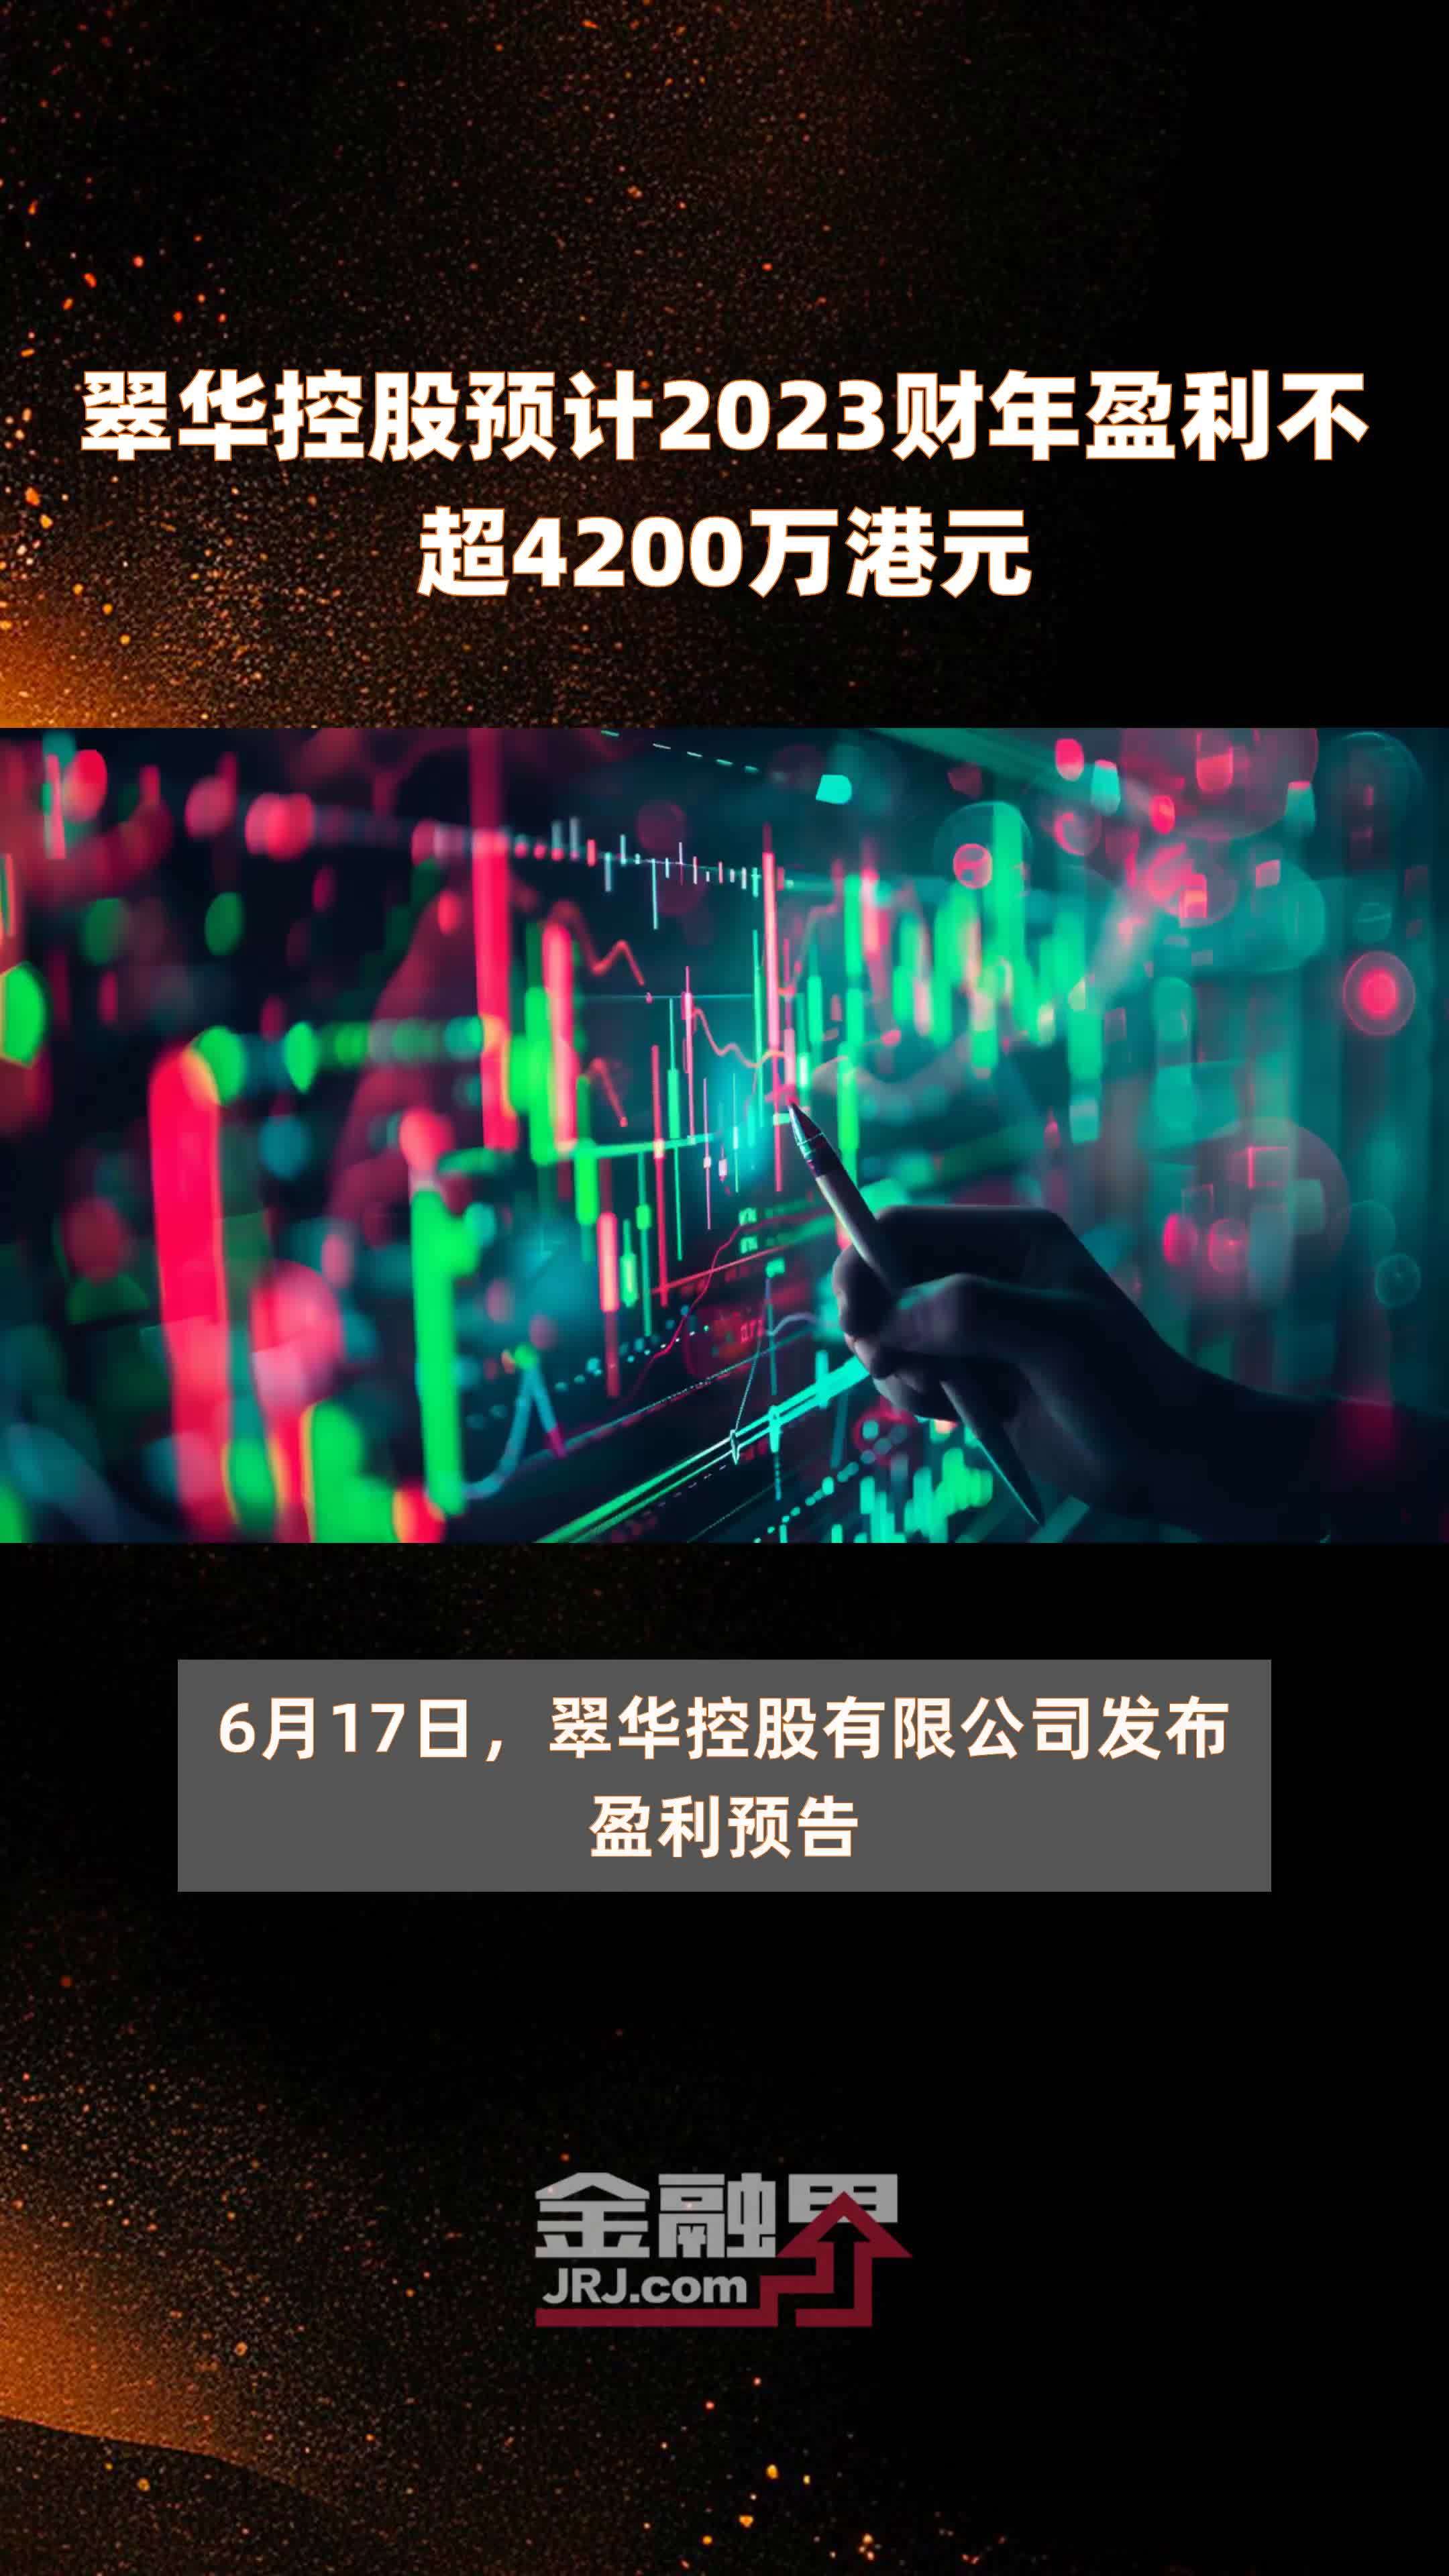 翠华控股预计2023财年盈利不超4200万港元 |快报